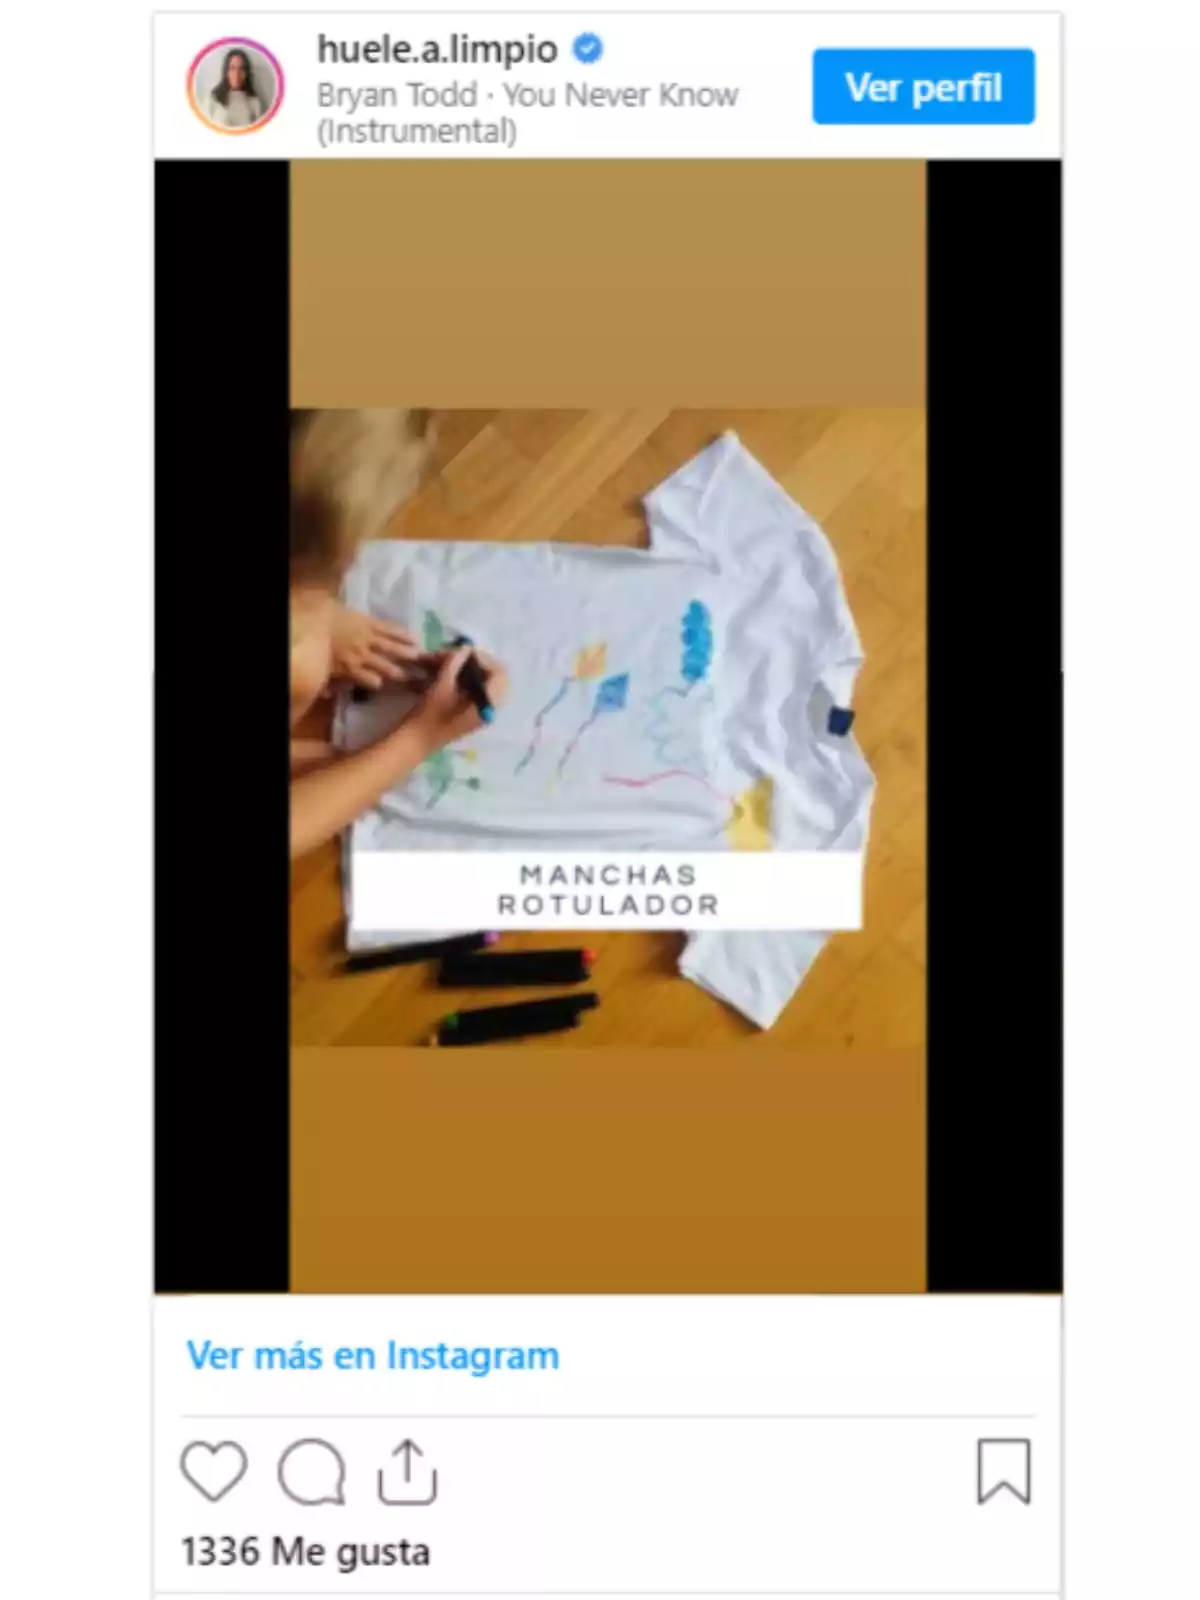 Publicación en Instagram de la cuenta @huele.a.limpio enseñando un truco para quitar manchas de rotulador